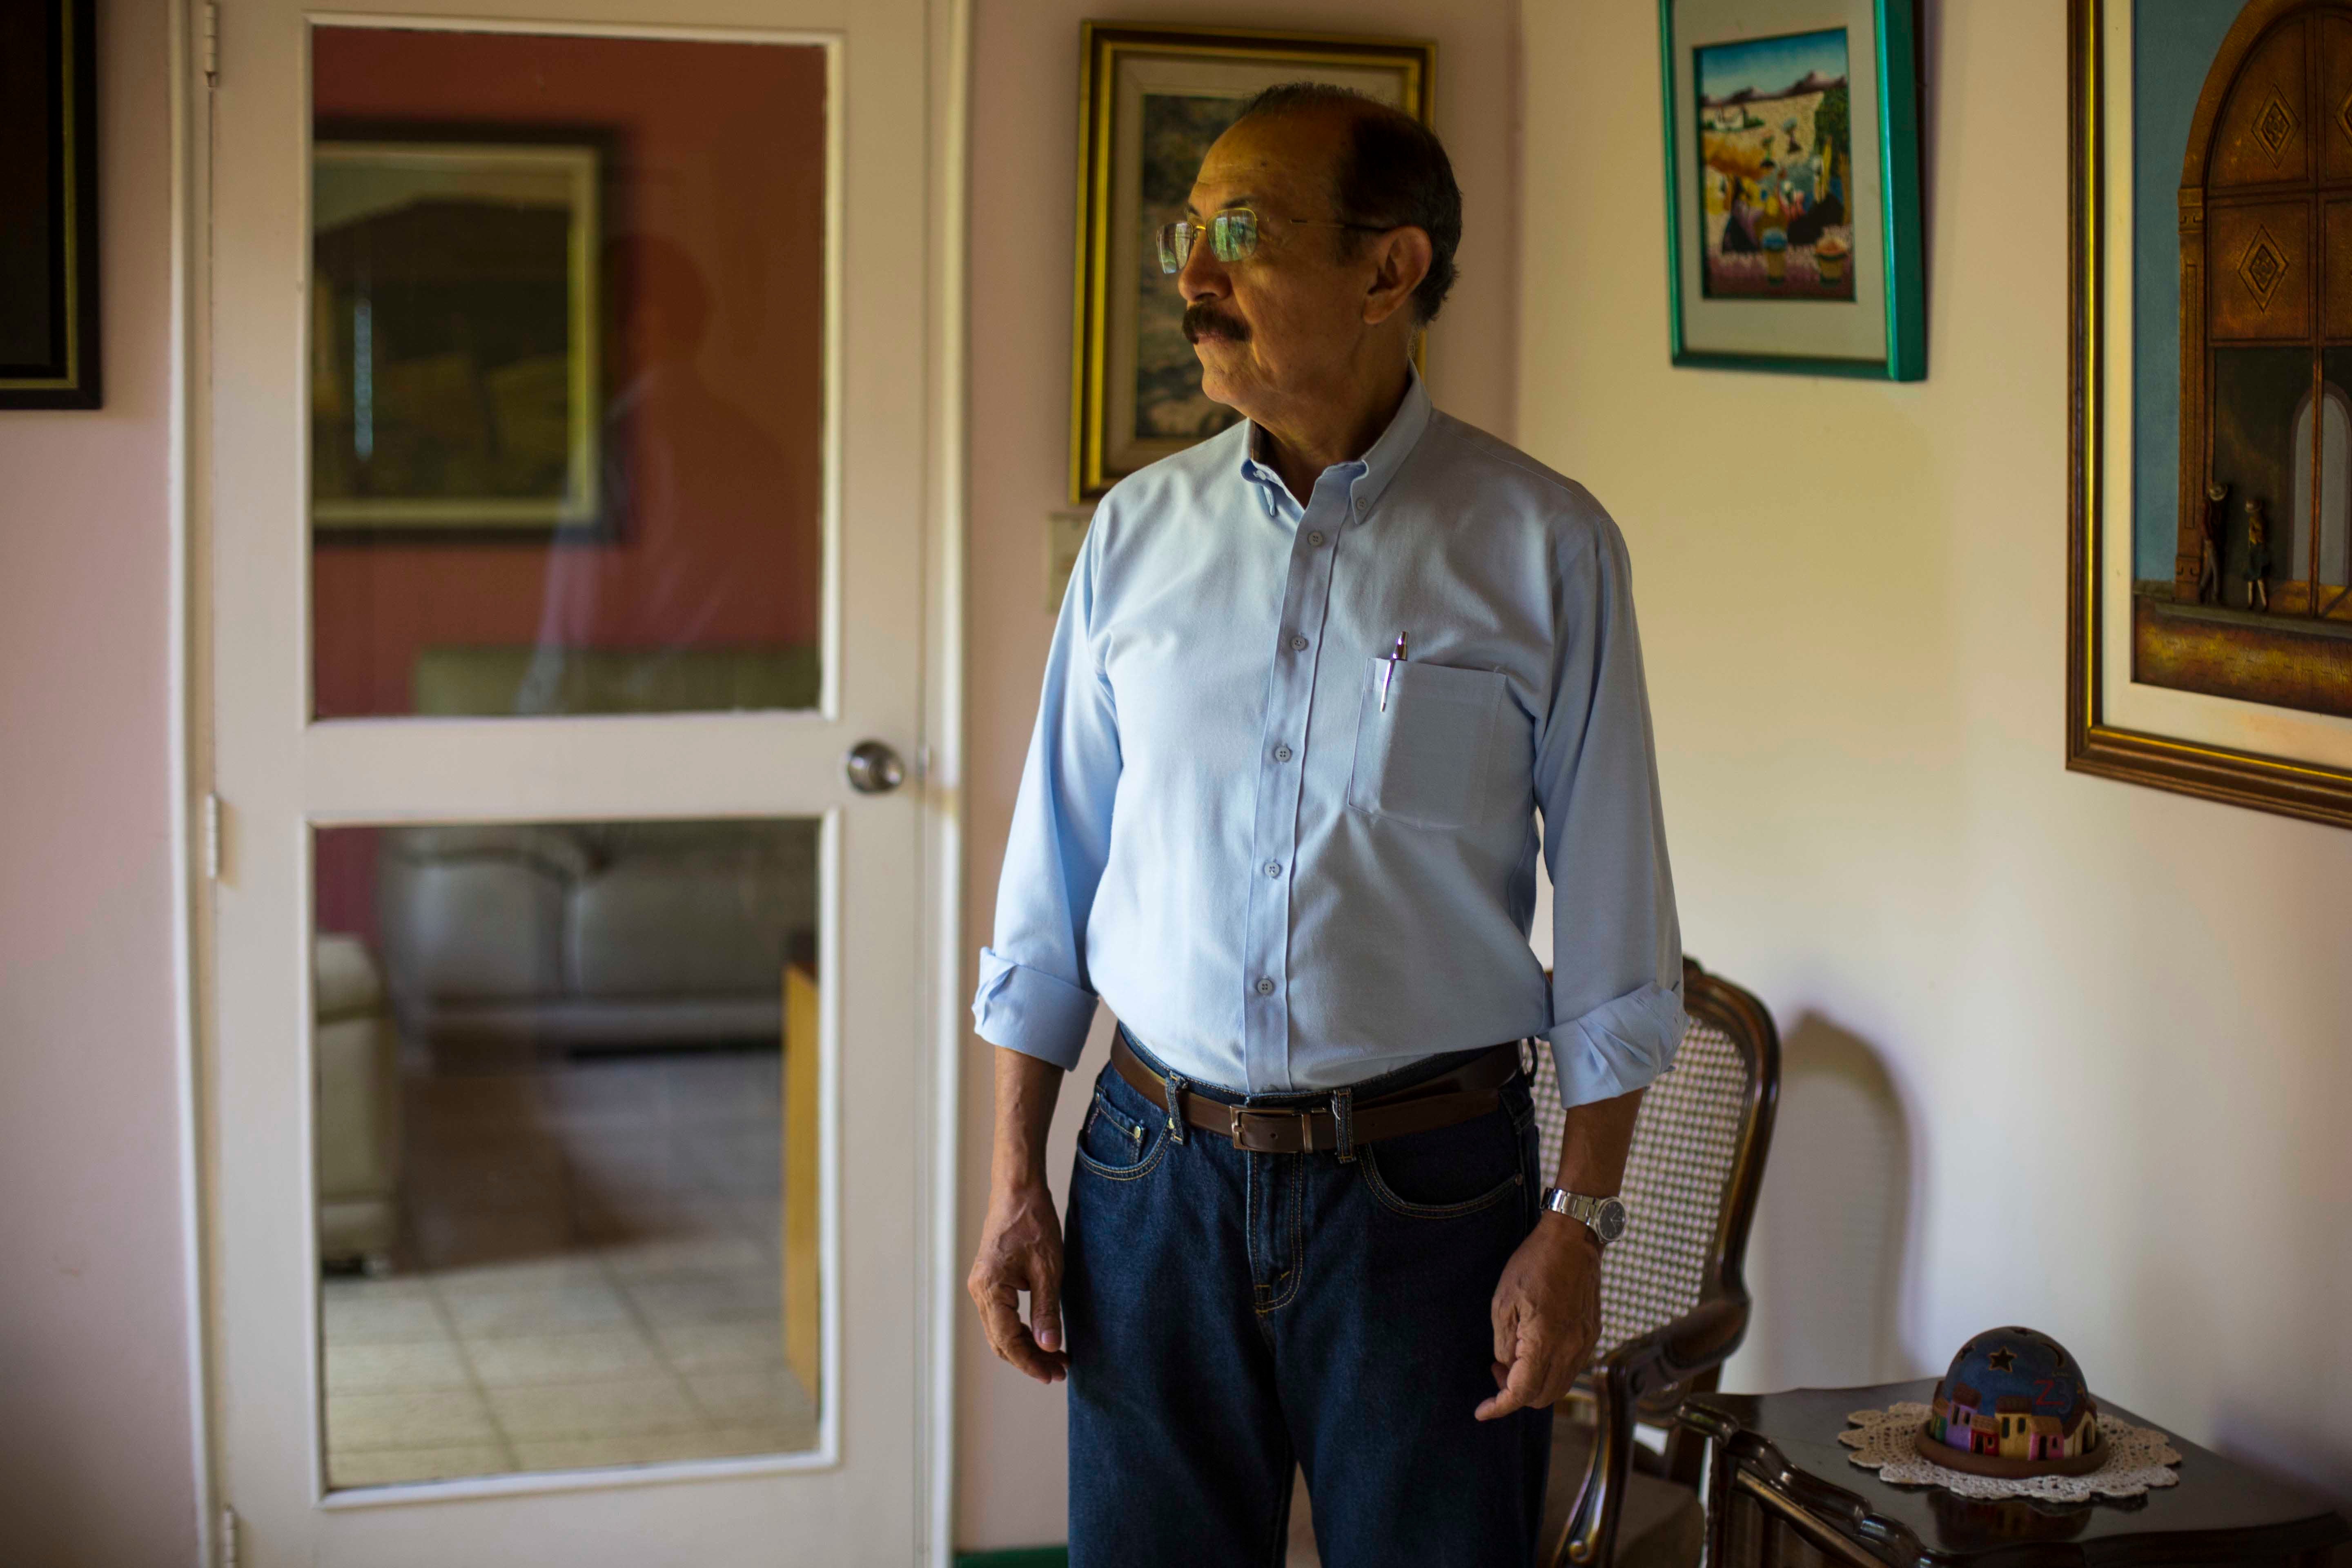 El general sandinista retirado Hugo Torres posa para un retrato en su casa, en Managua, Nicaragua, el 2 de mayo de 2018. Uno de los líderes opositores detenido de cara a las elecciones presidenciales de 2021, Torres murió en prisión el 12 de febrero de 2022, a los 73 años.